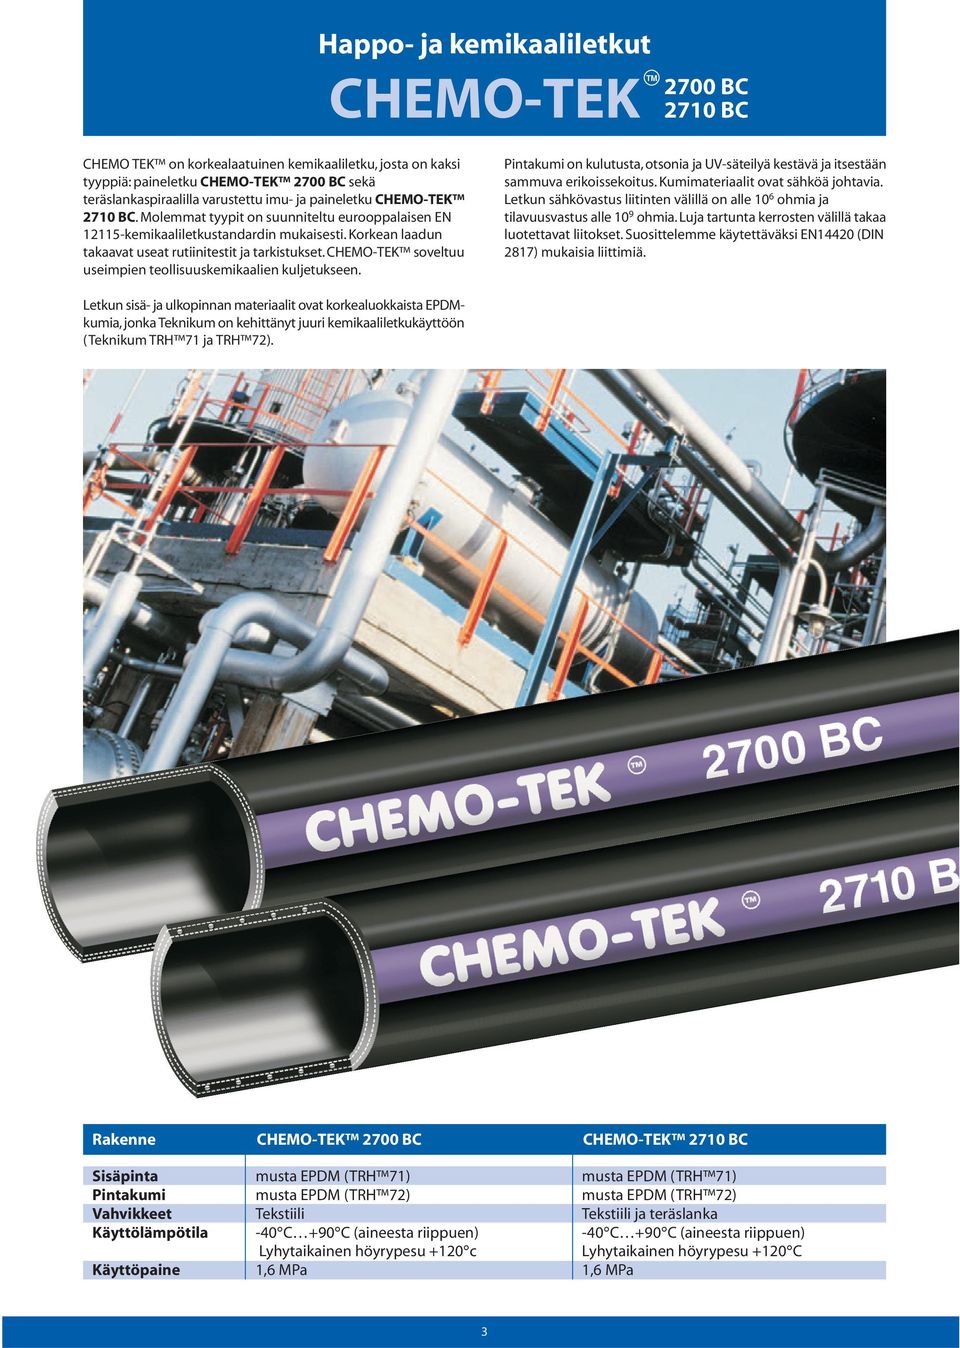 CHEMO-TEK soveltuu useimpien teollisuuskemikaalien kuljetukseen. on kulutusta, otsonia ja UV-säteilyä kestävä ja itsestään sammuva erikoissekoitus. Kumimateriaalit ovat sähköä johtavia.